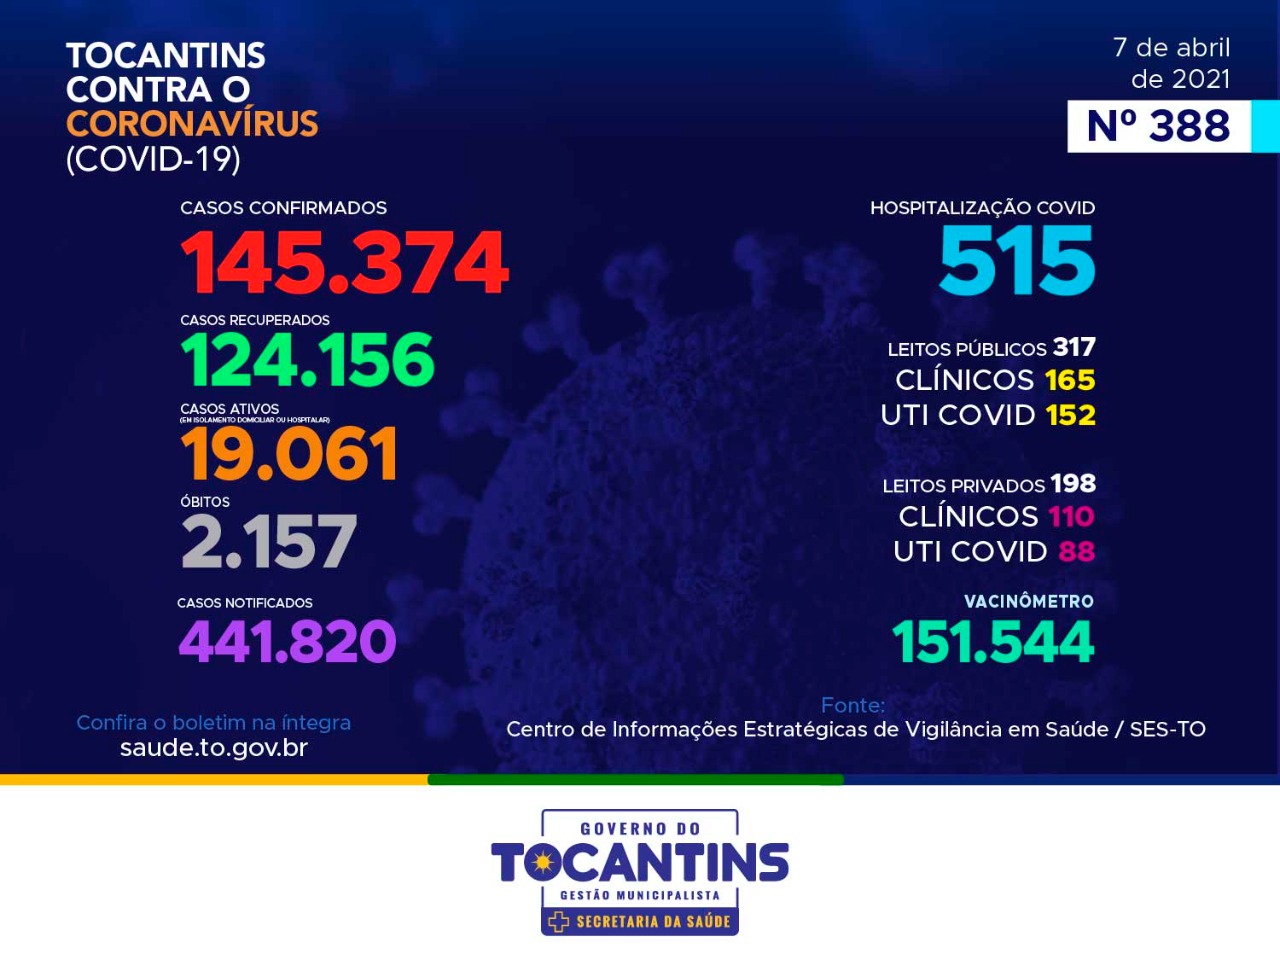 Coronavírus: com 872 novos casos, Tocantins ultrapassa as 145 mil confirmações